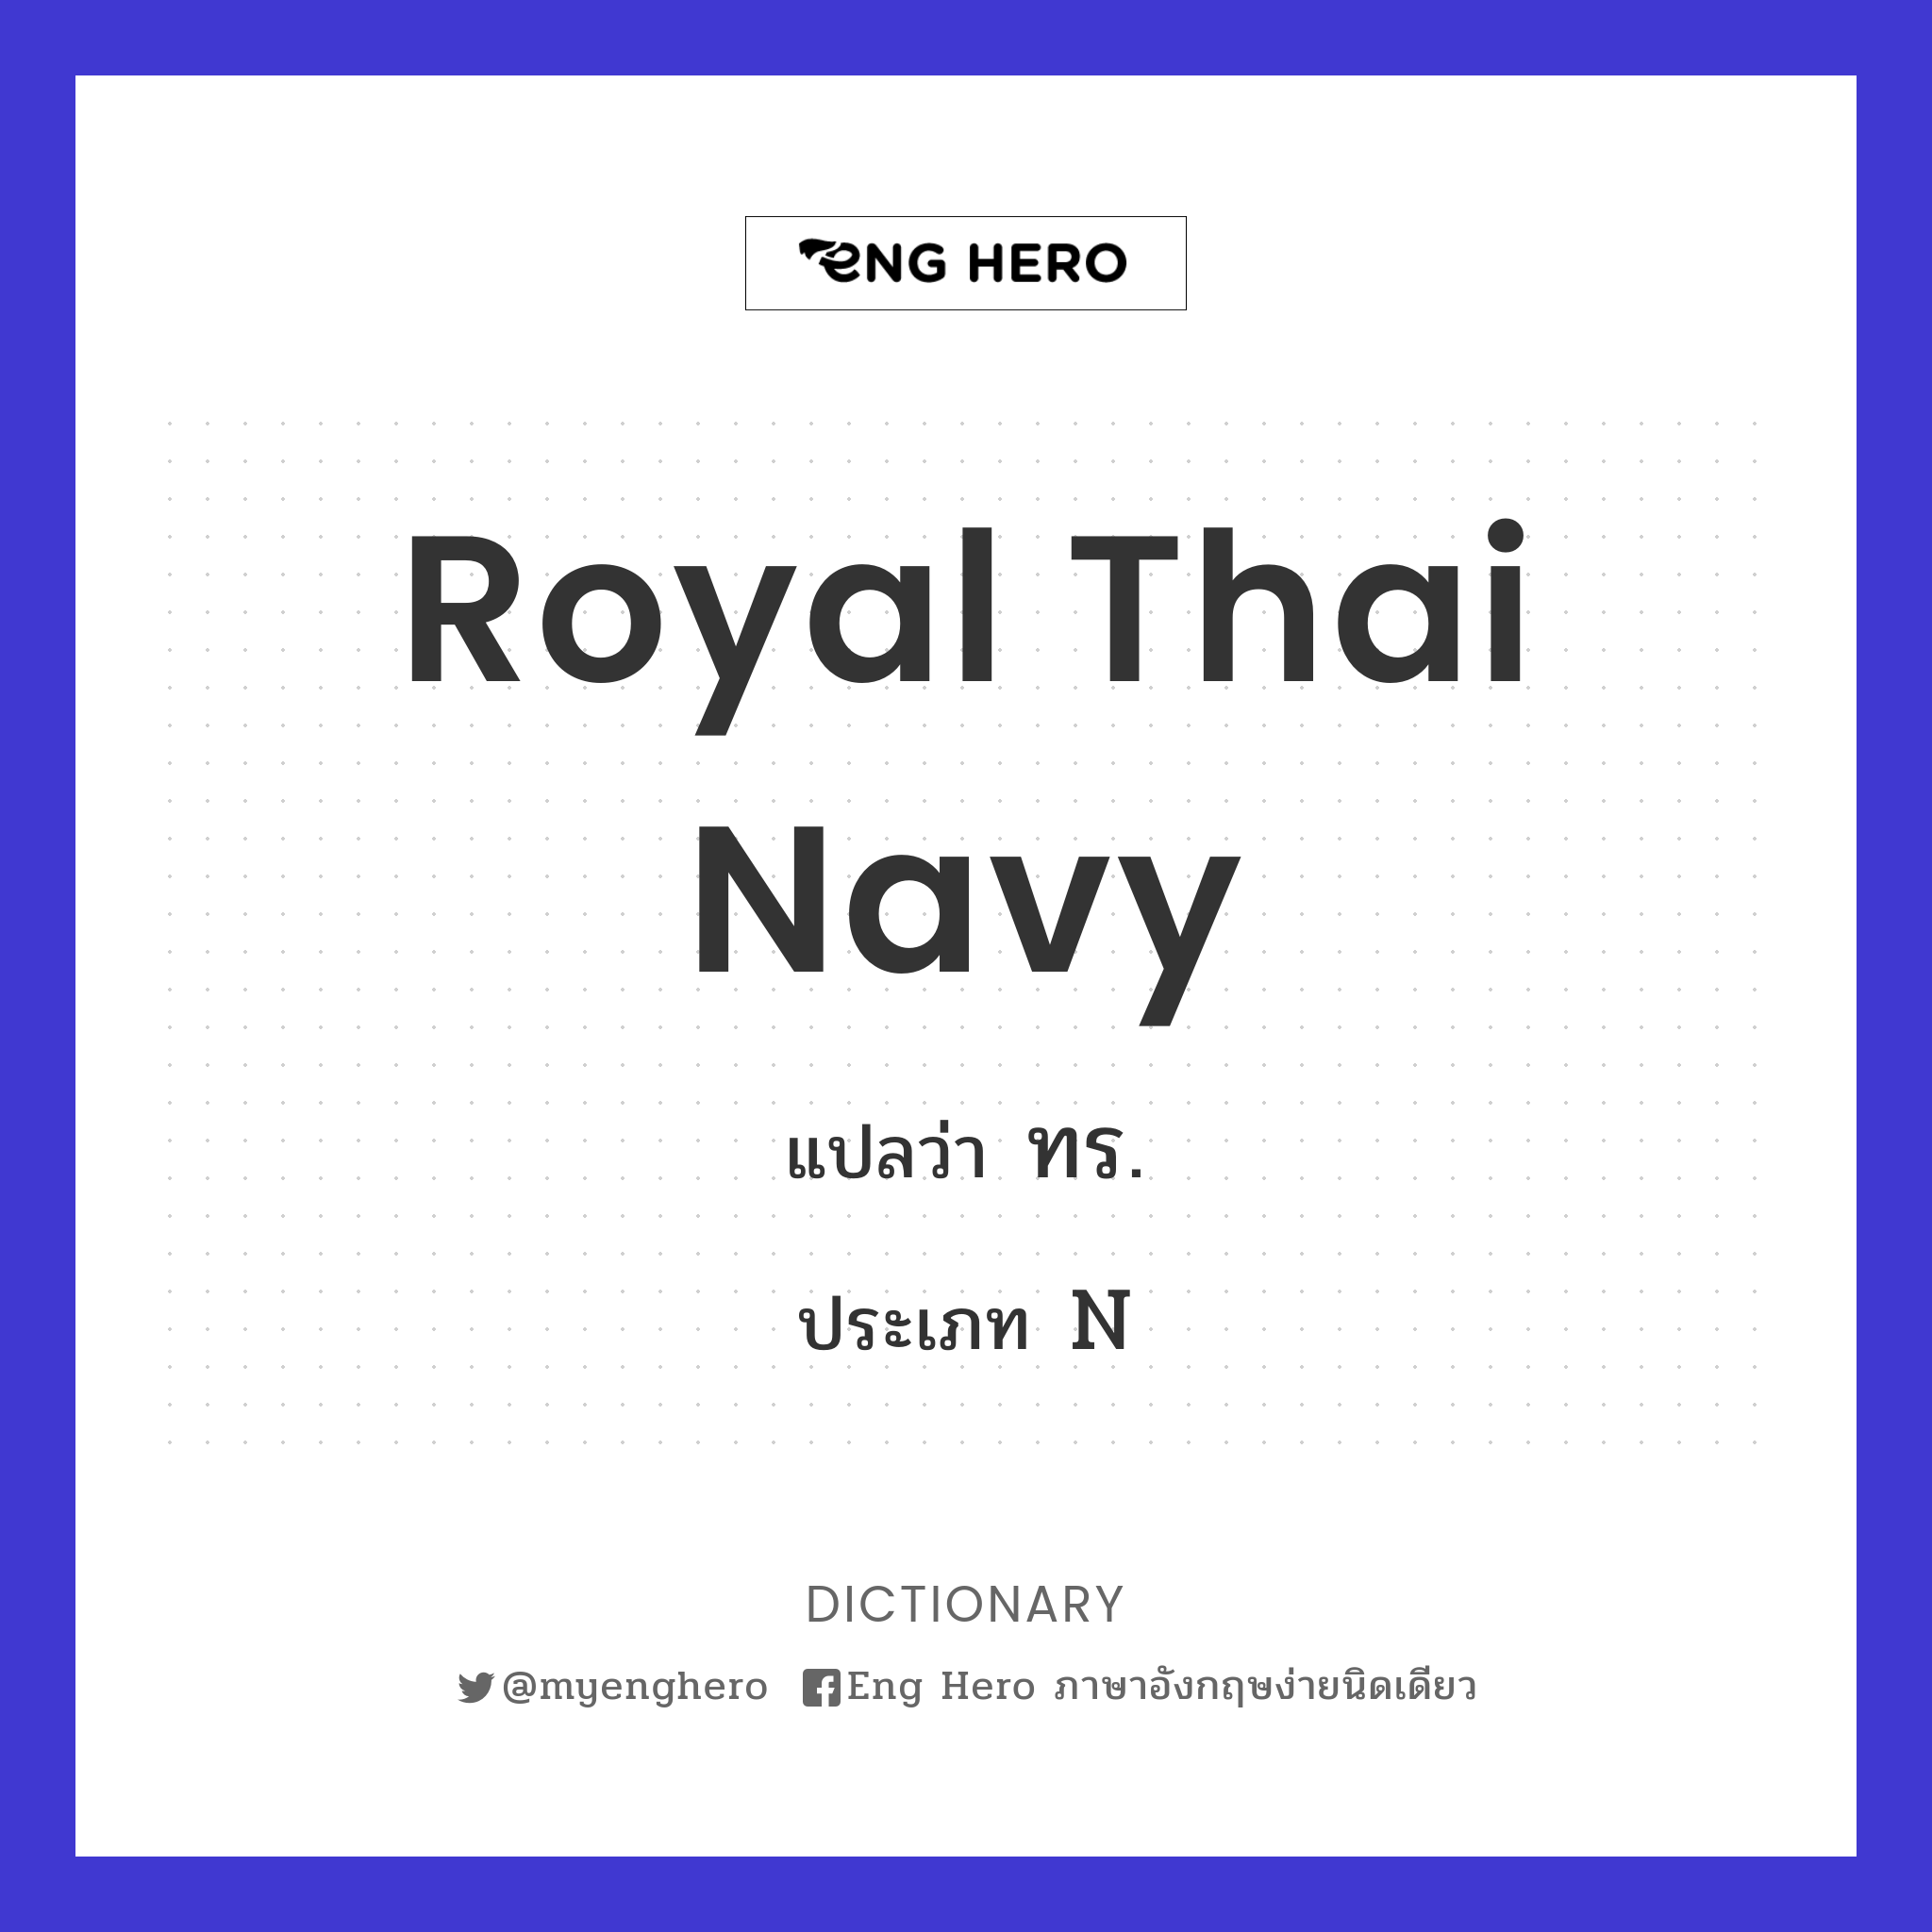 Royal Thai Navy